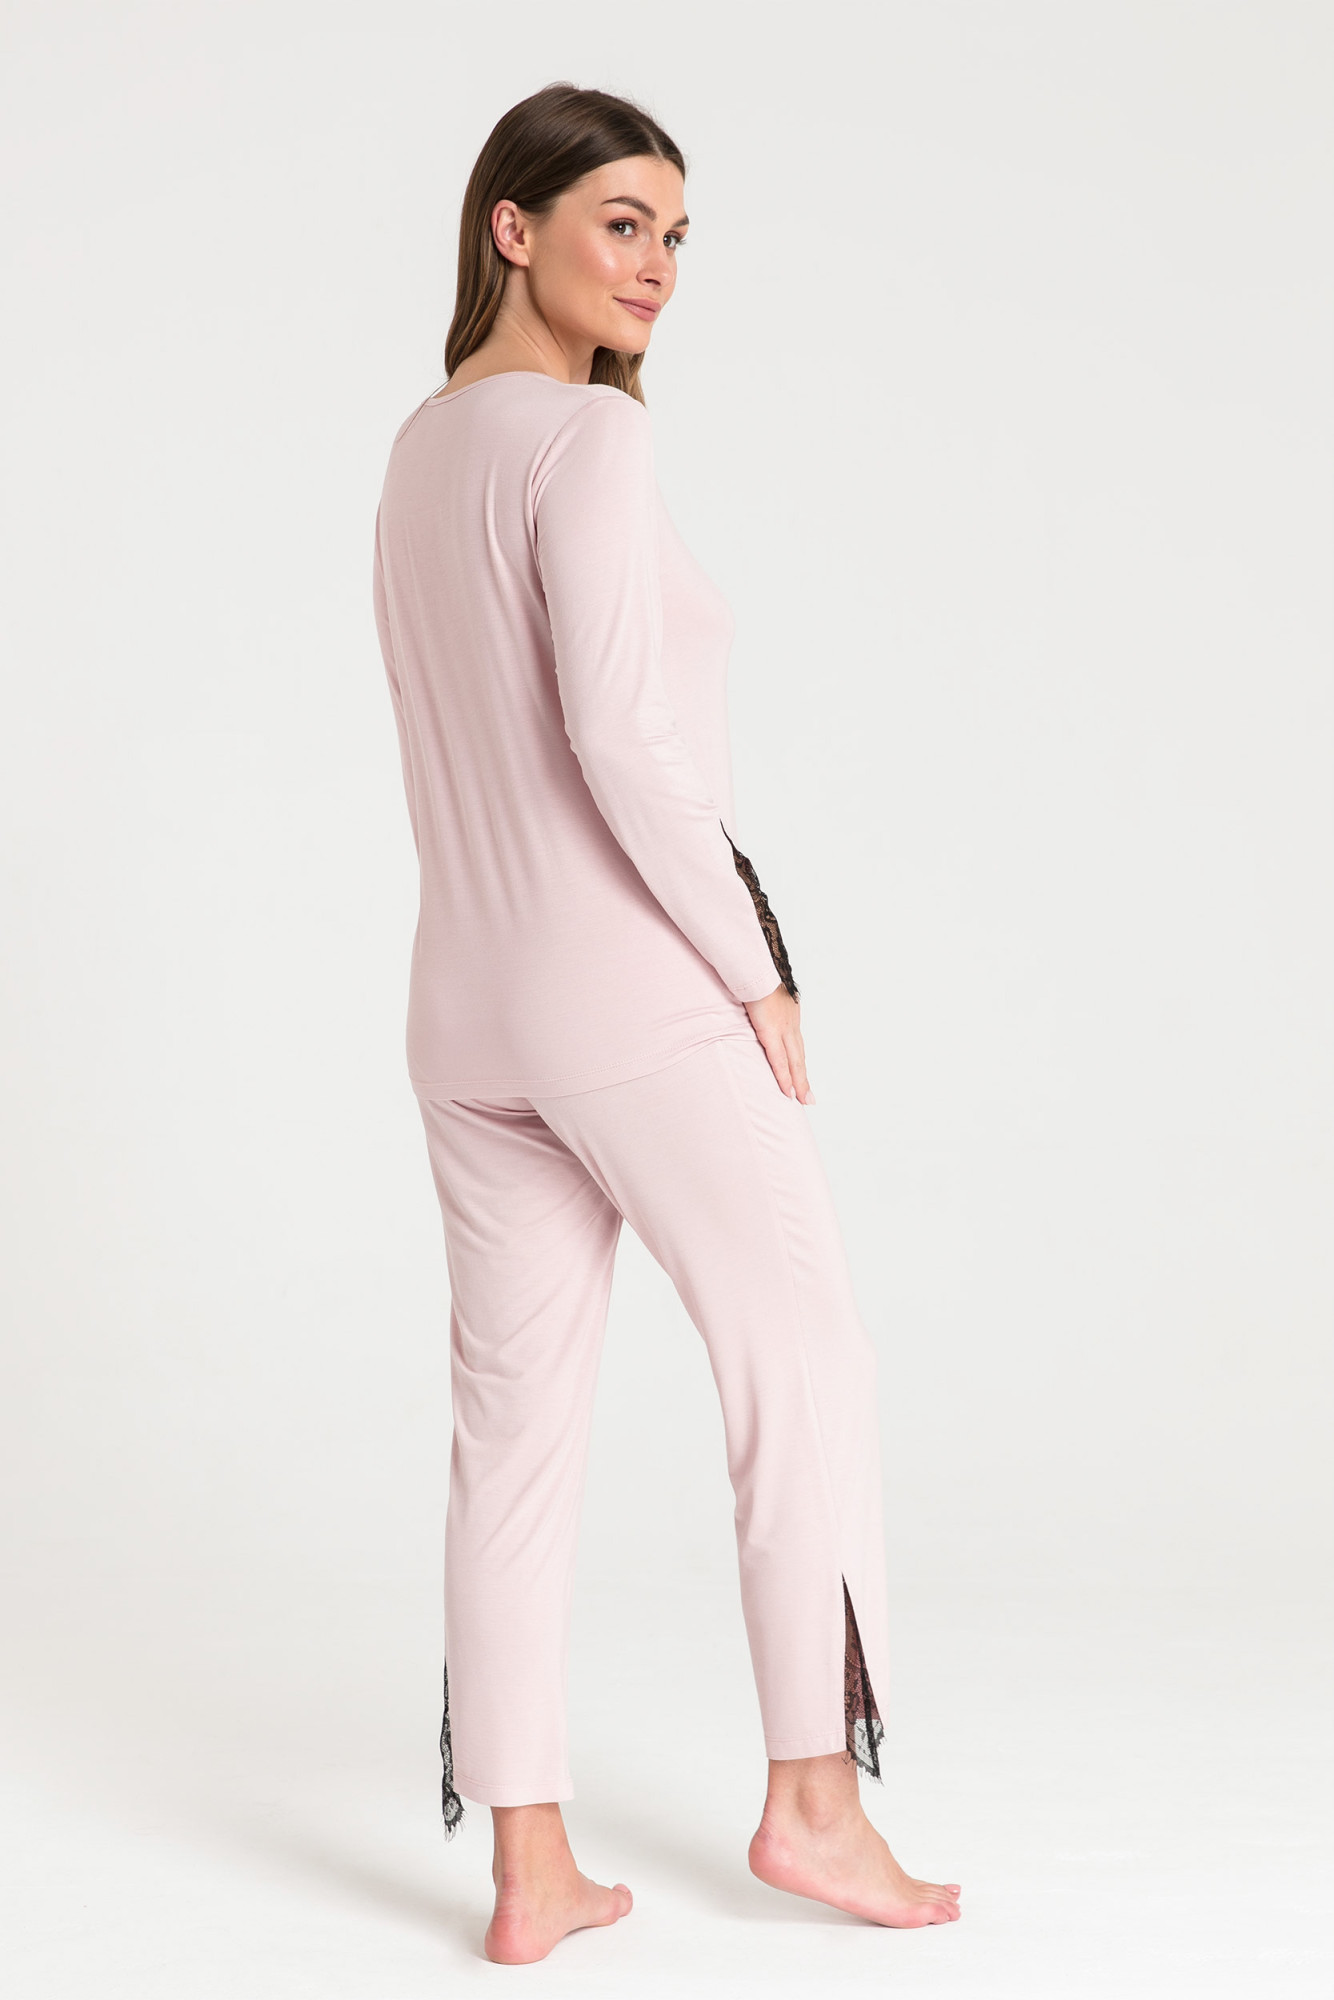 Levně Dámský pyžamový Top LA072 Pudr růžová - LaLupa pudrovo-růžová XL